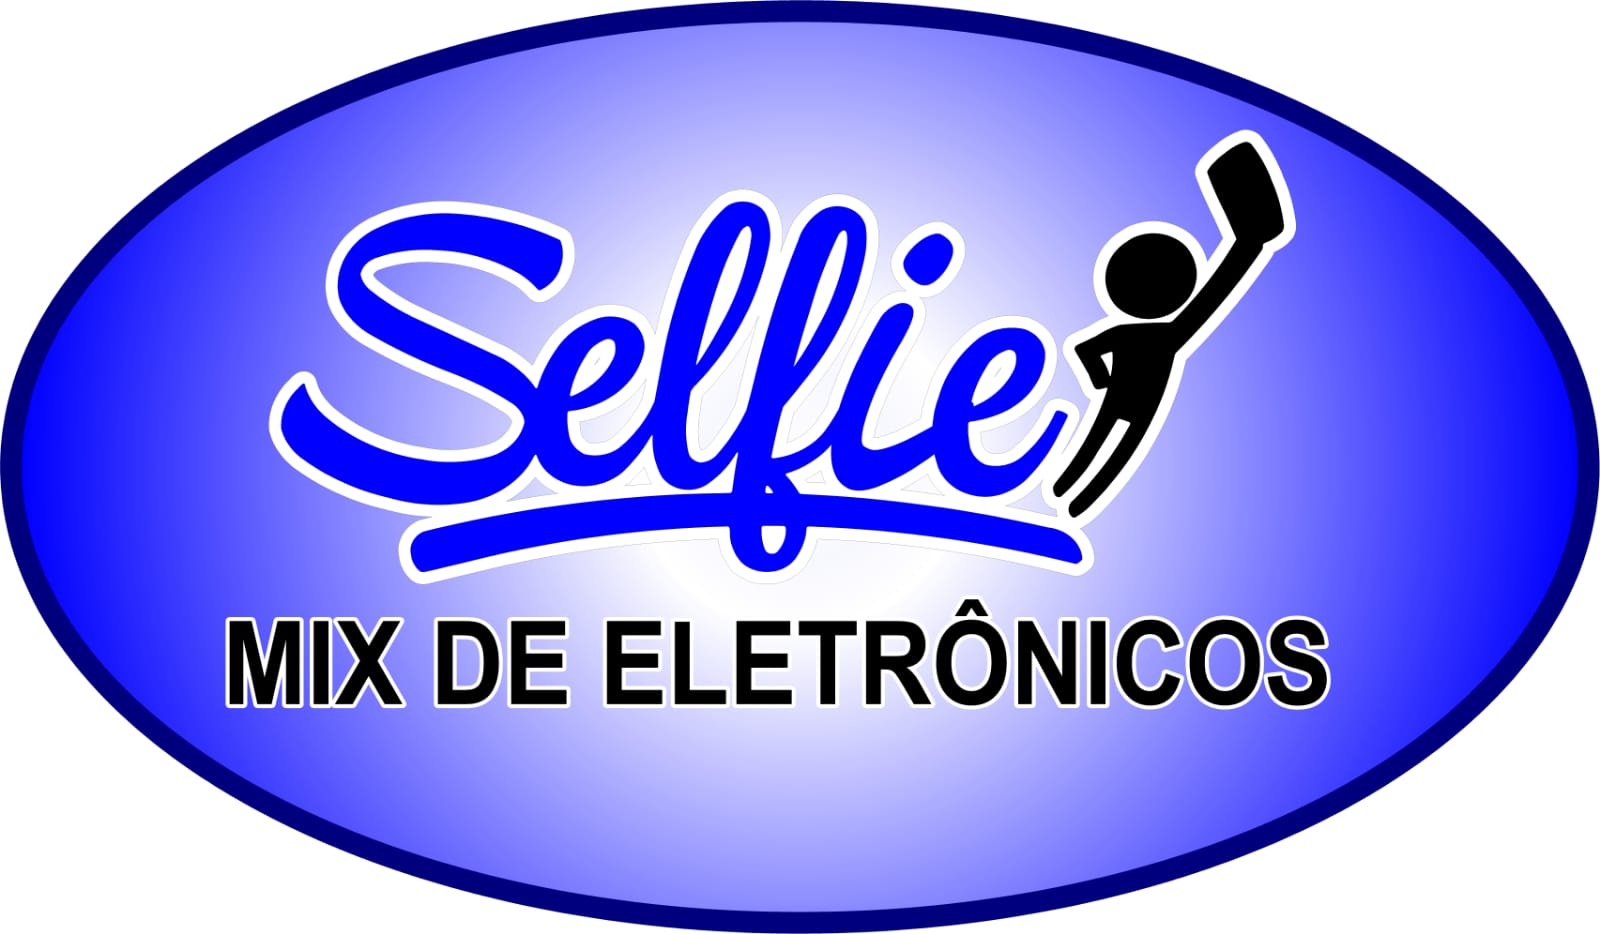 Selfie Mix de Eletrônicos